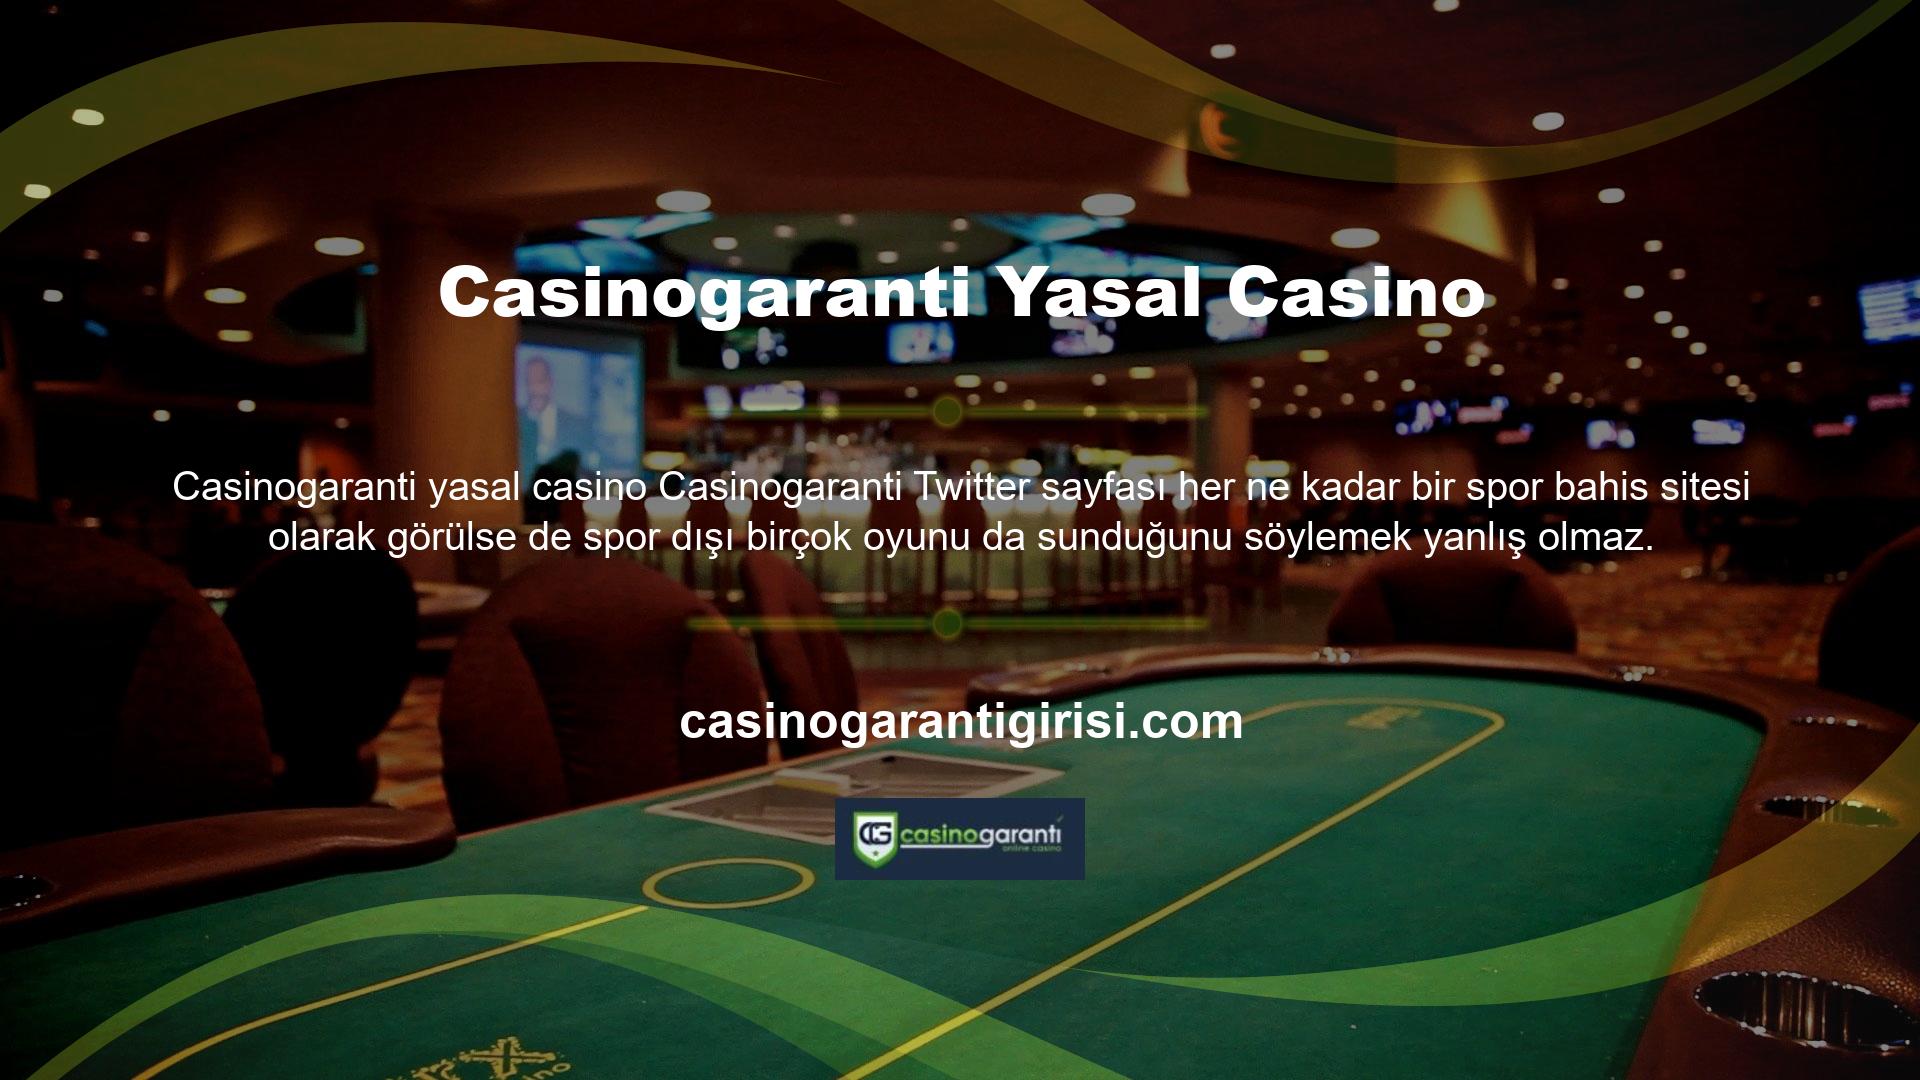 Casino, canlı casino, slot ve poker gibi birçok farklı oyun türü vardır